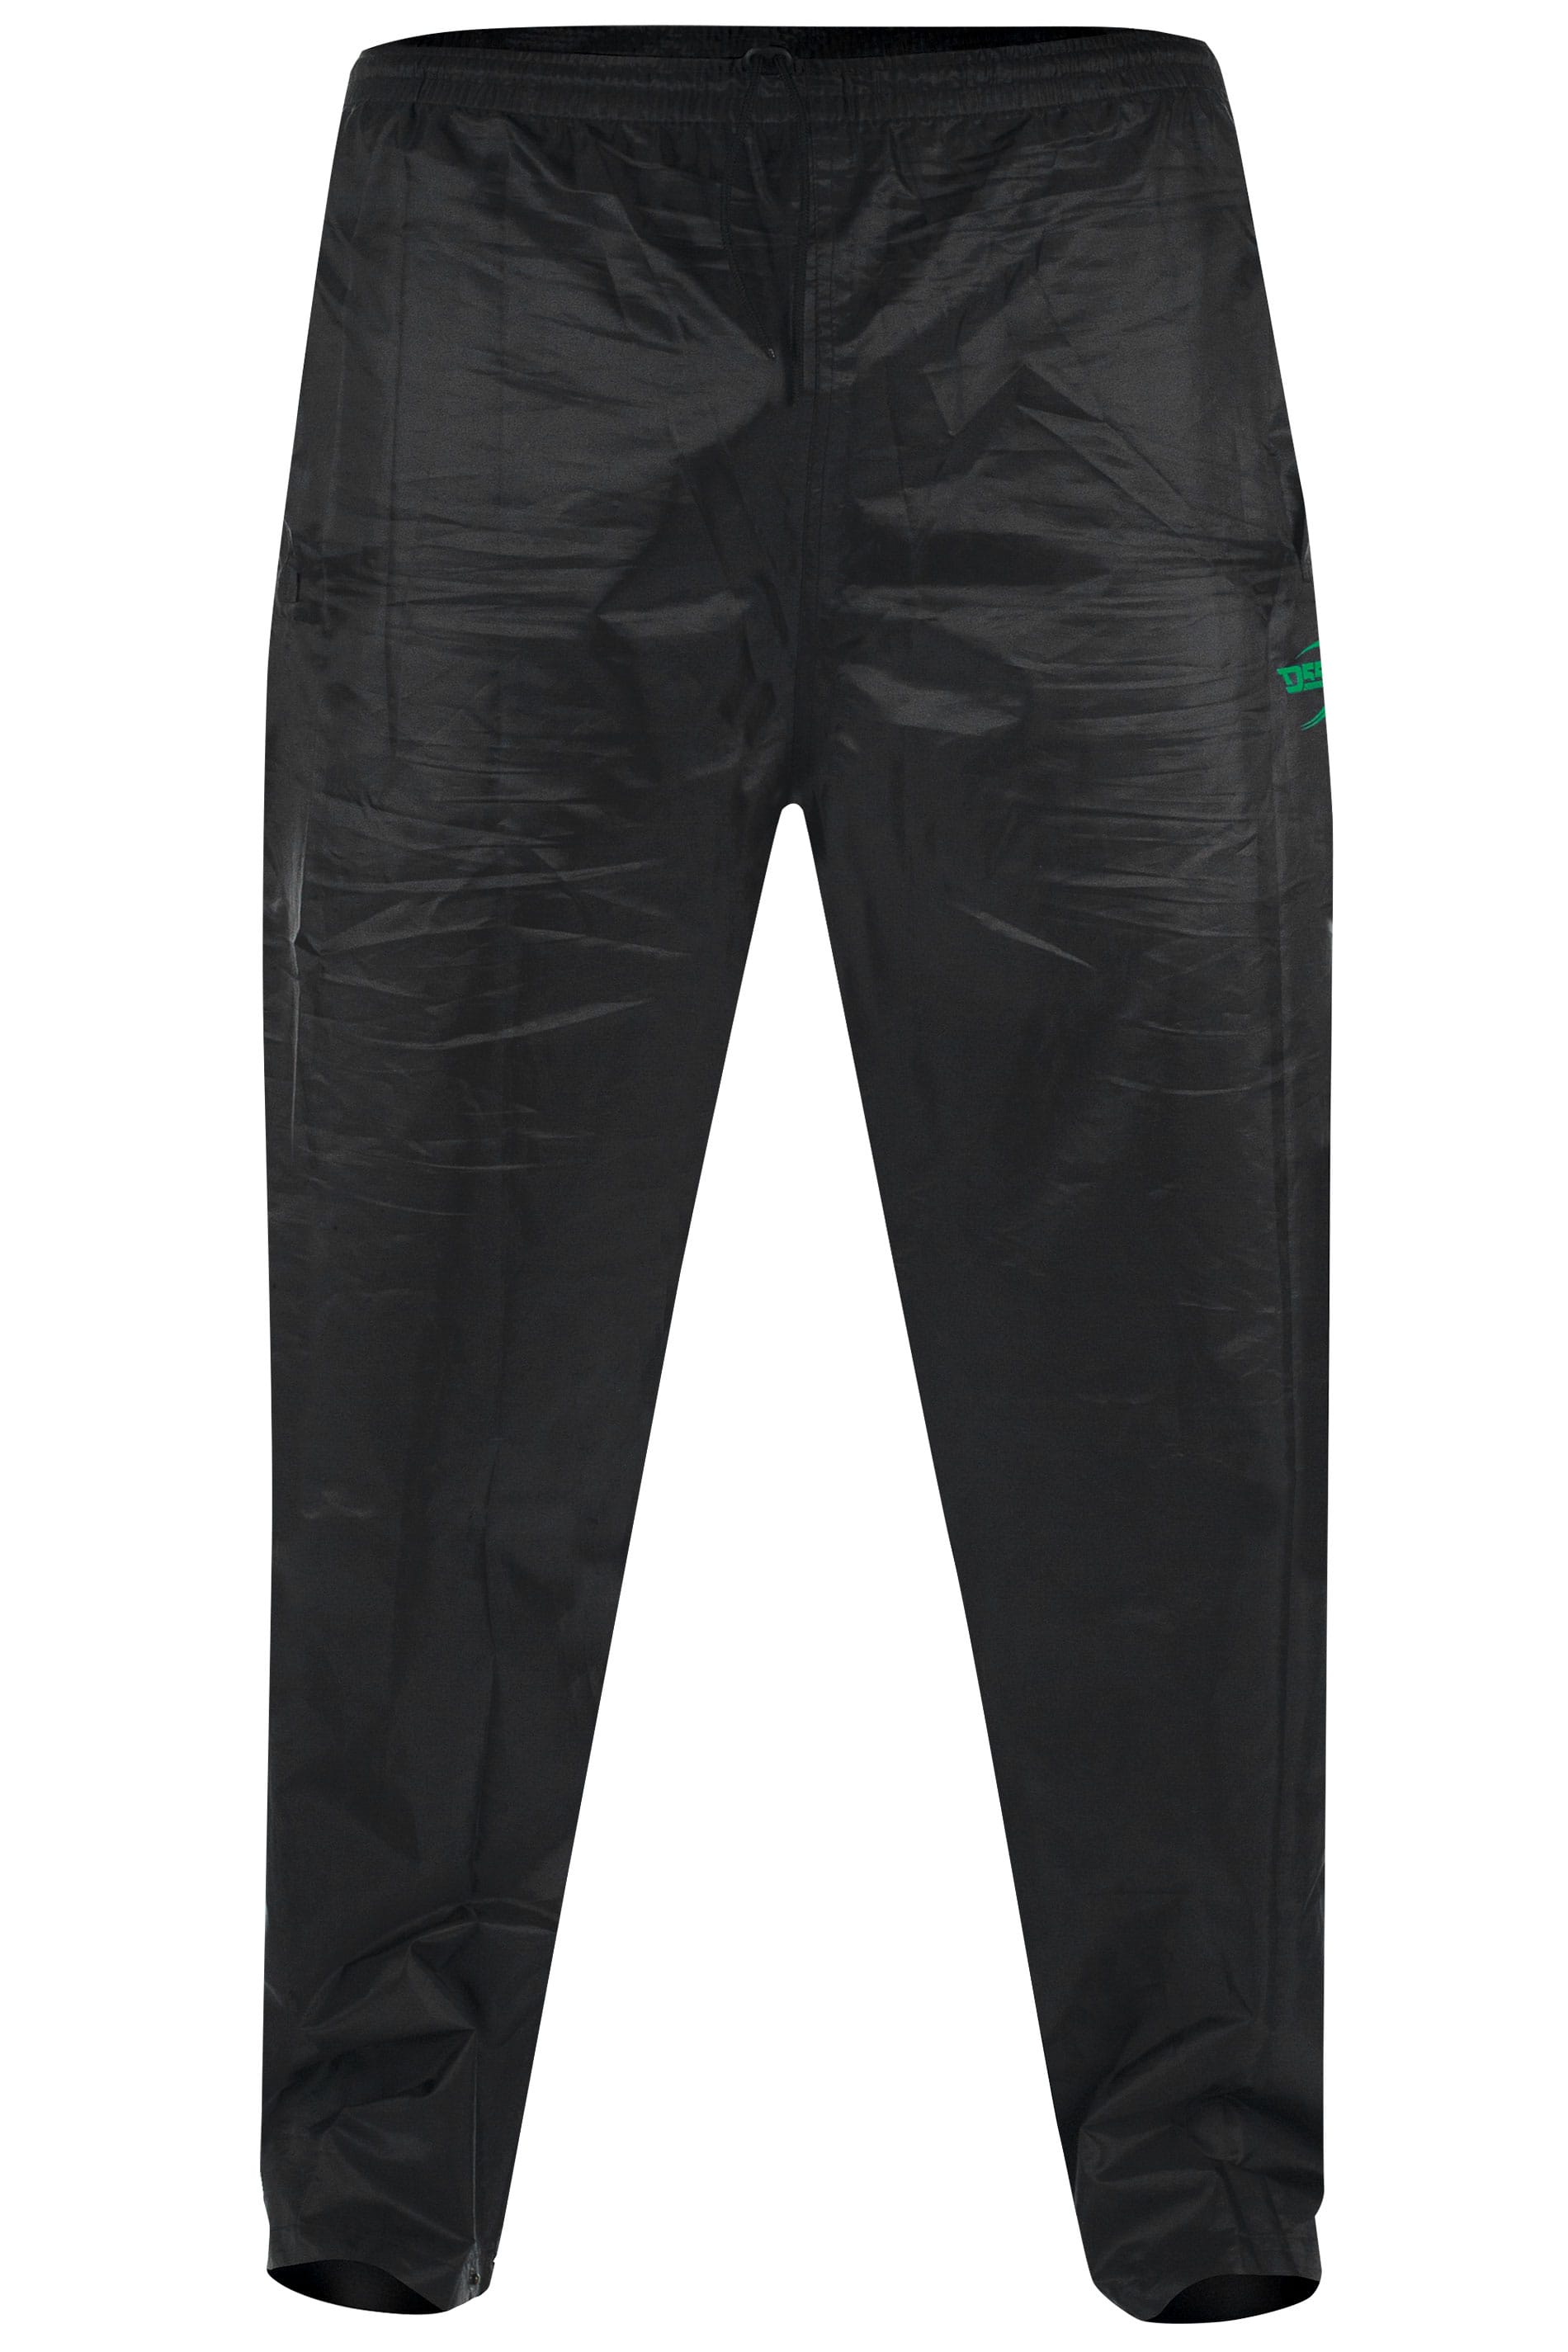 D555 Black Foldaway Waterproof Trousers | BadRhino 2